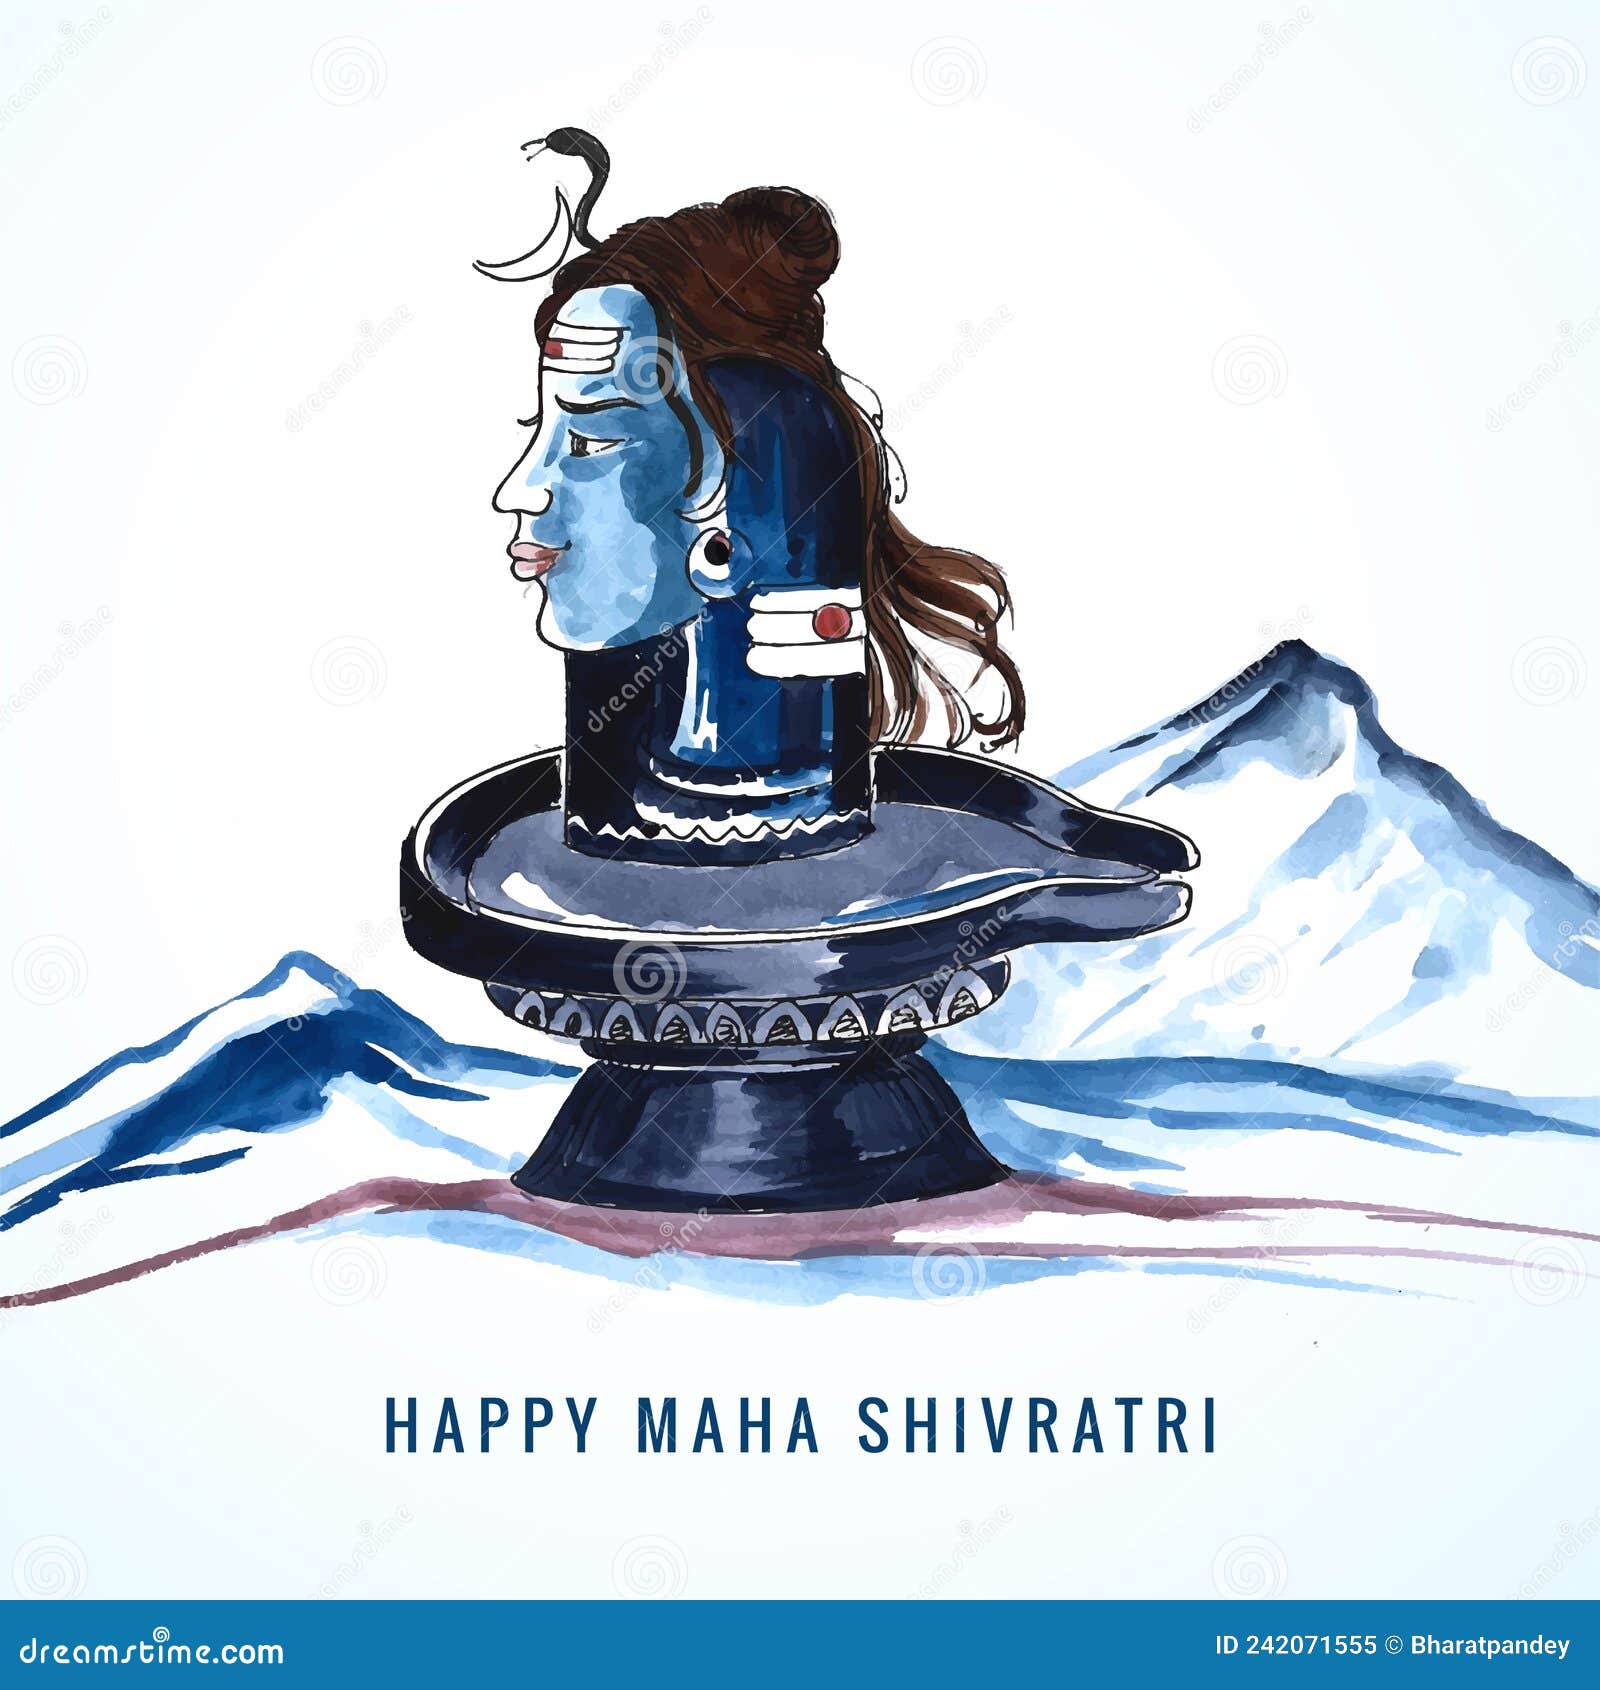 Free Vector | Maha shivratri - happy nag panchami lord shiva - poster, hand drawn  sketch vector illustration.